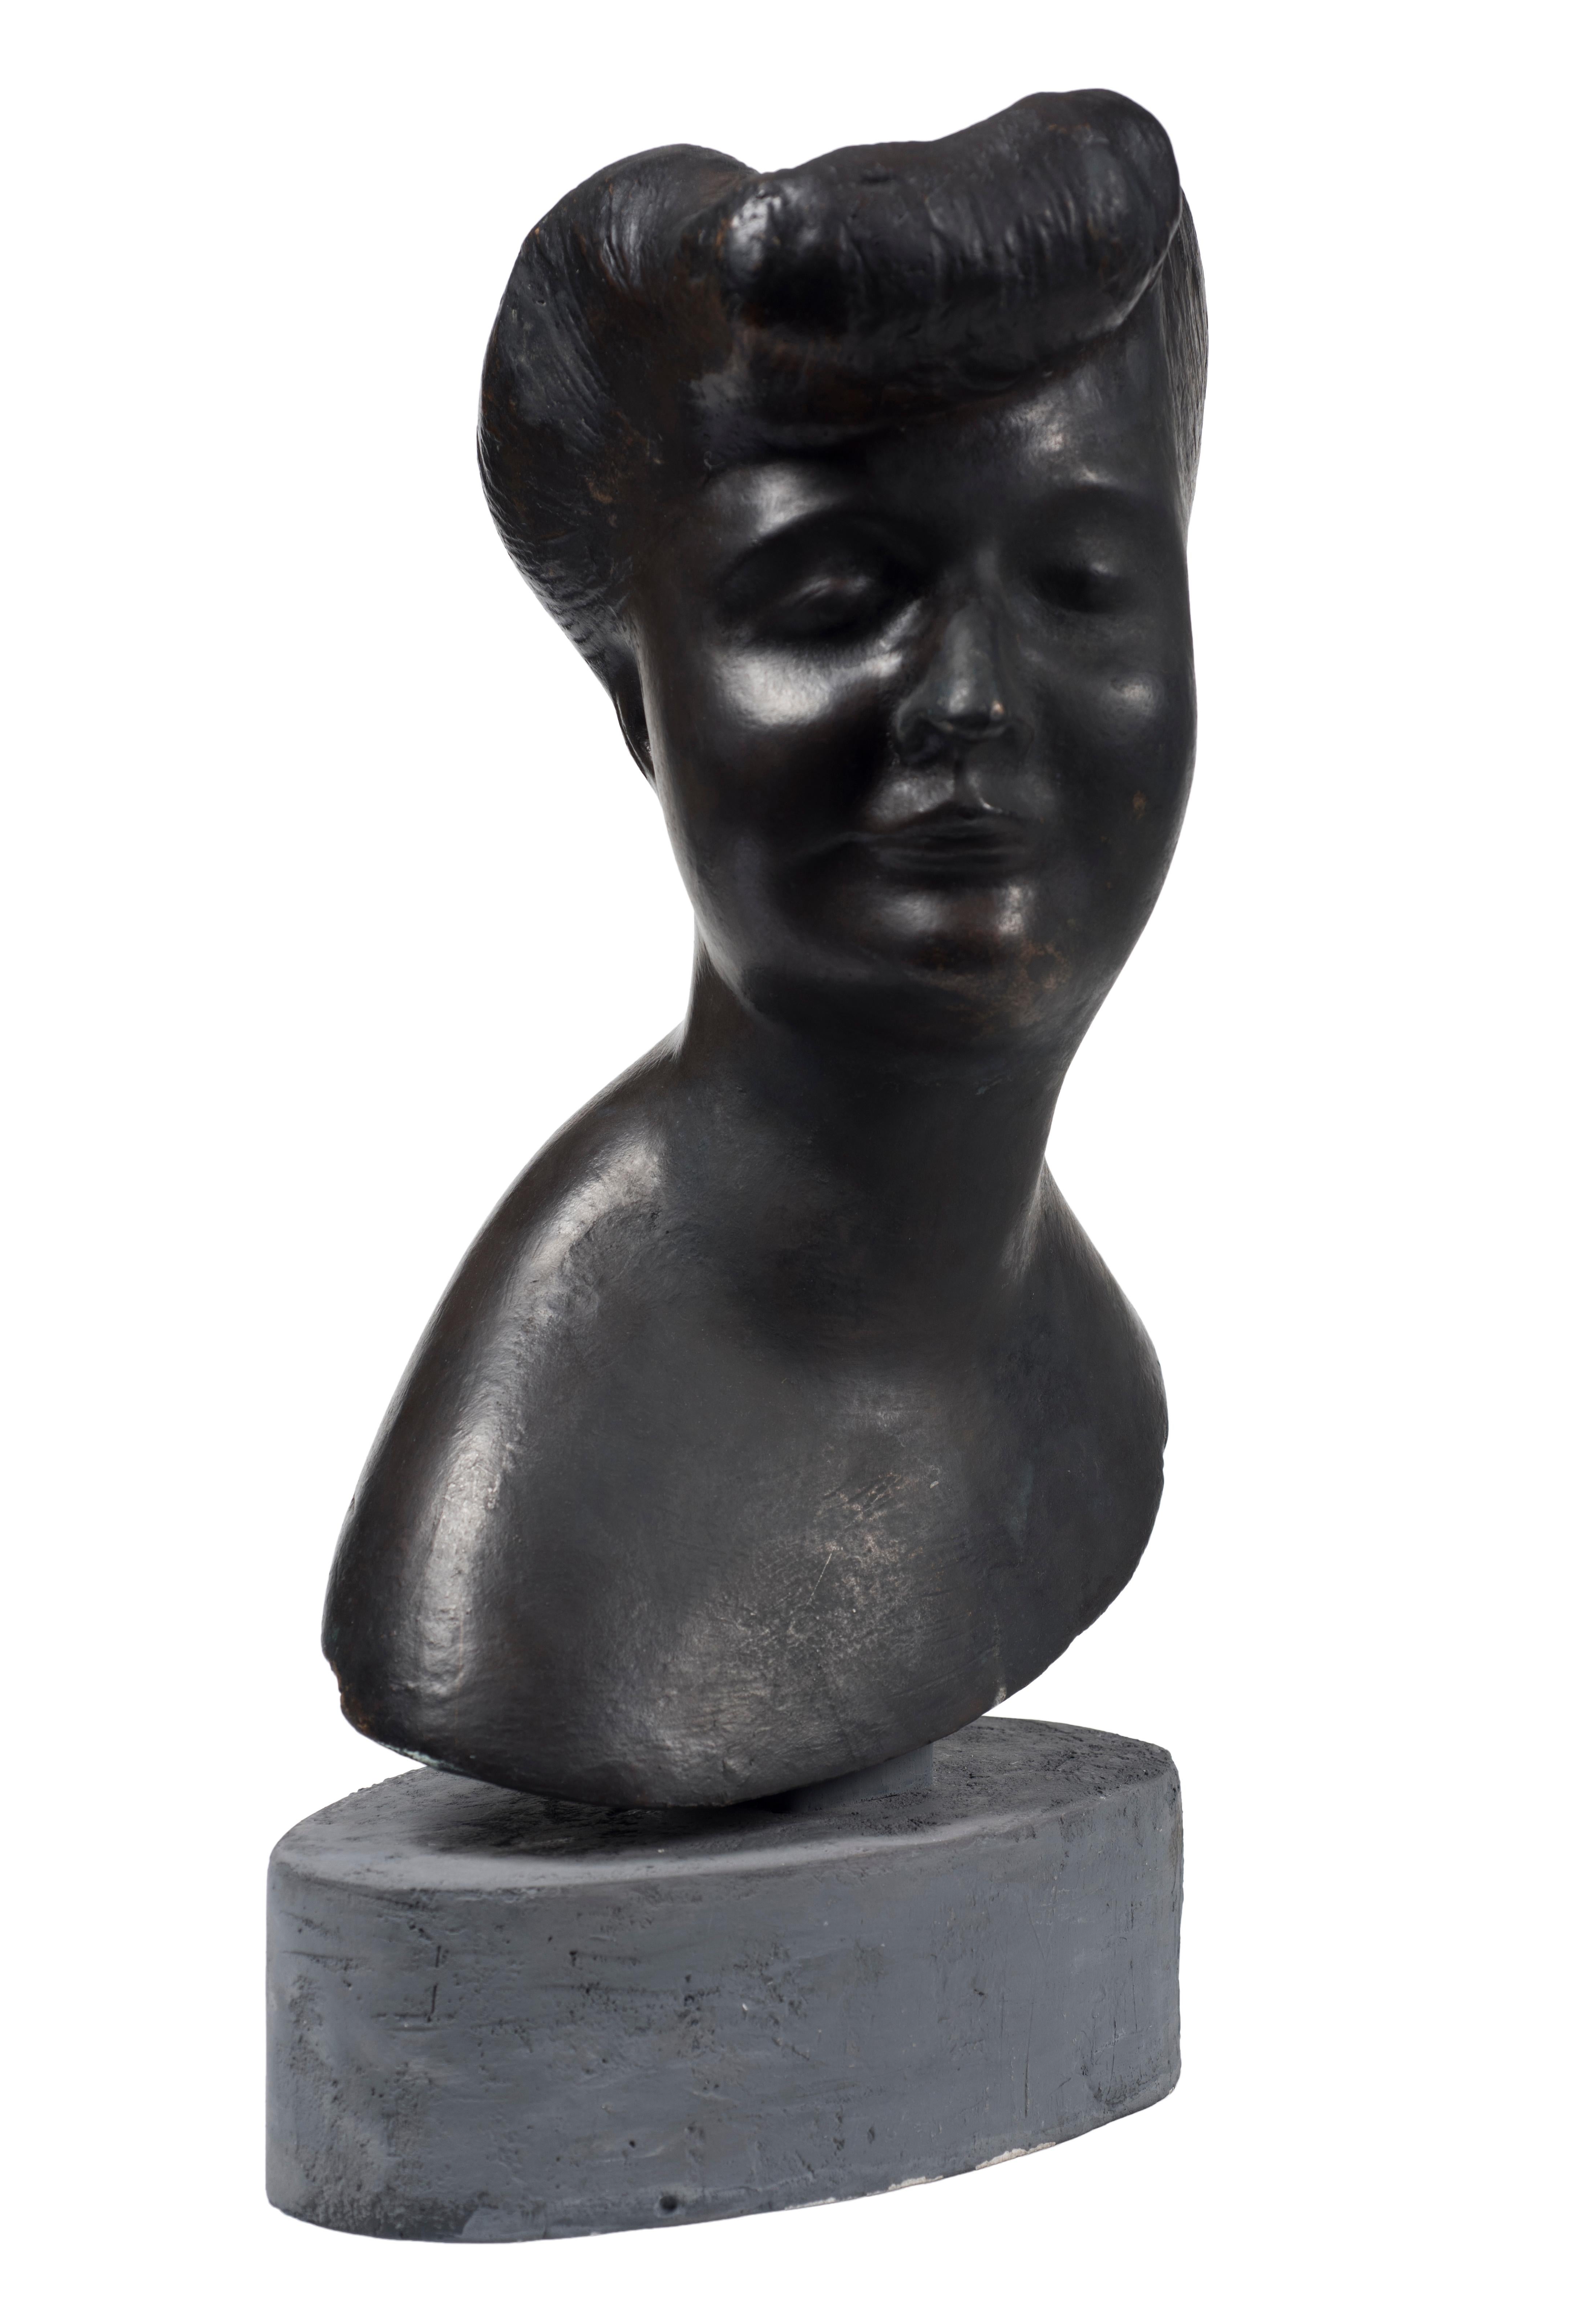 Head Of Woman est une sculpture originale en bronze réalisée par Emilio Greco.

Signé par l'artiste. Excellentes conditions.

La sculpture représente une élégante tête de femme.

